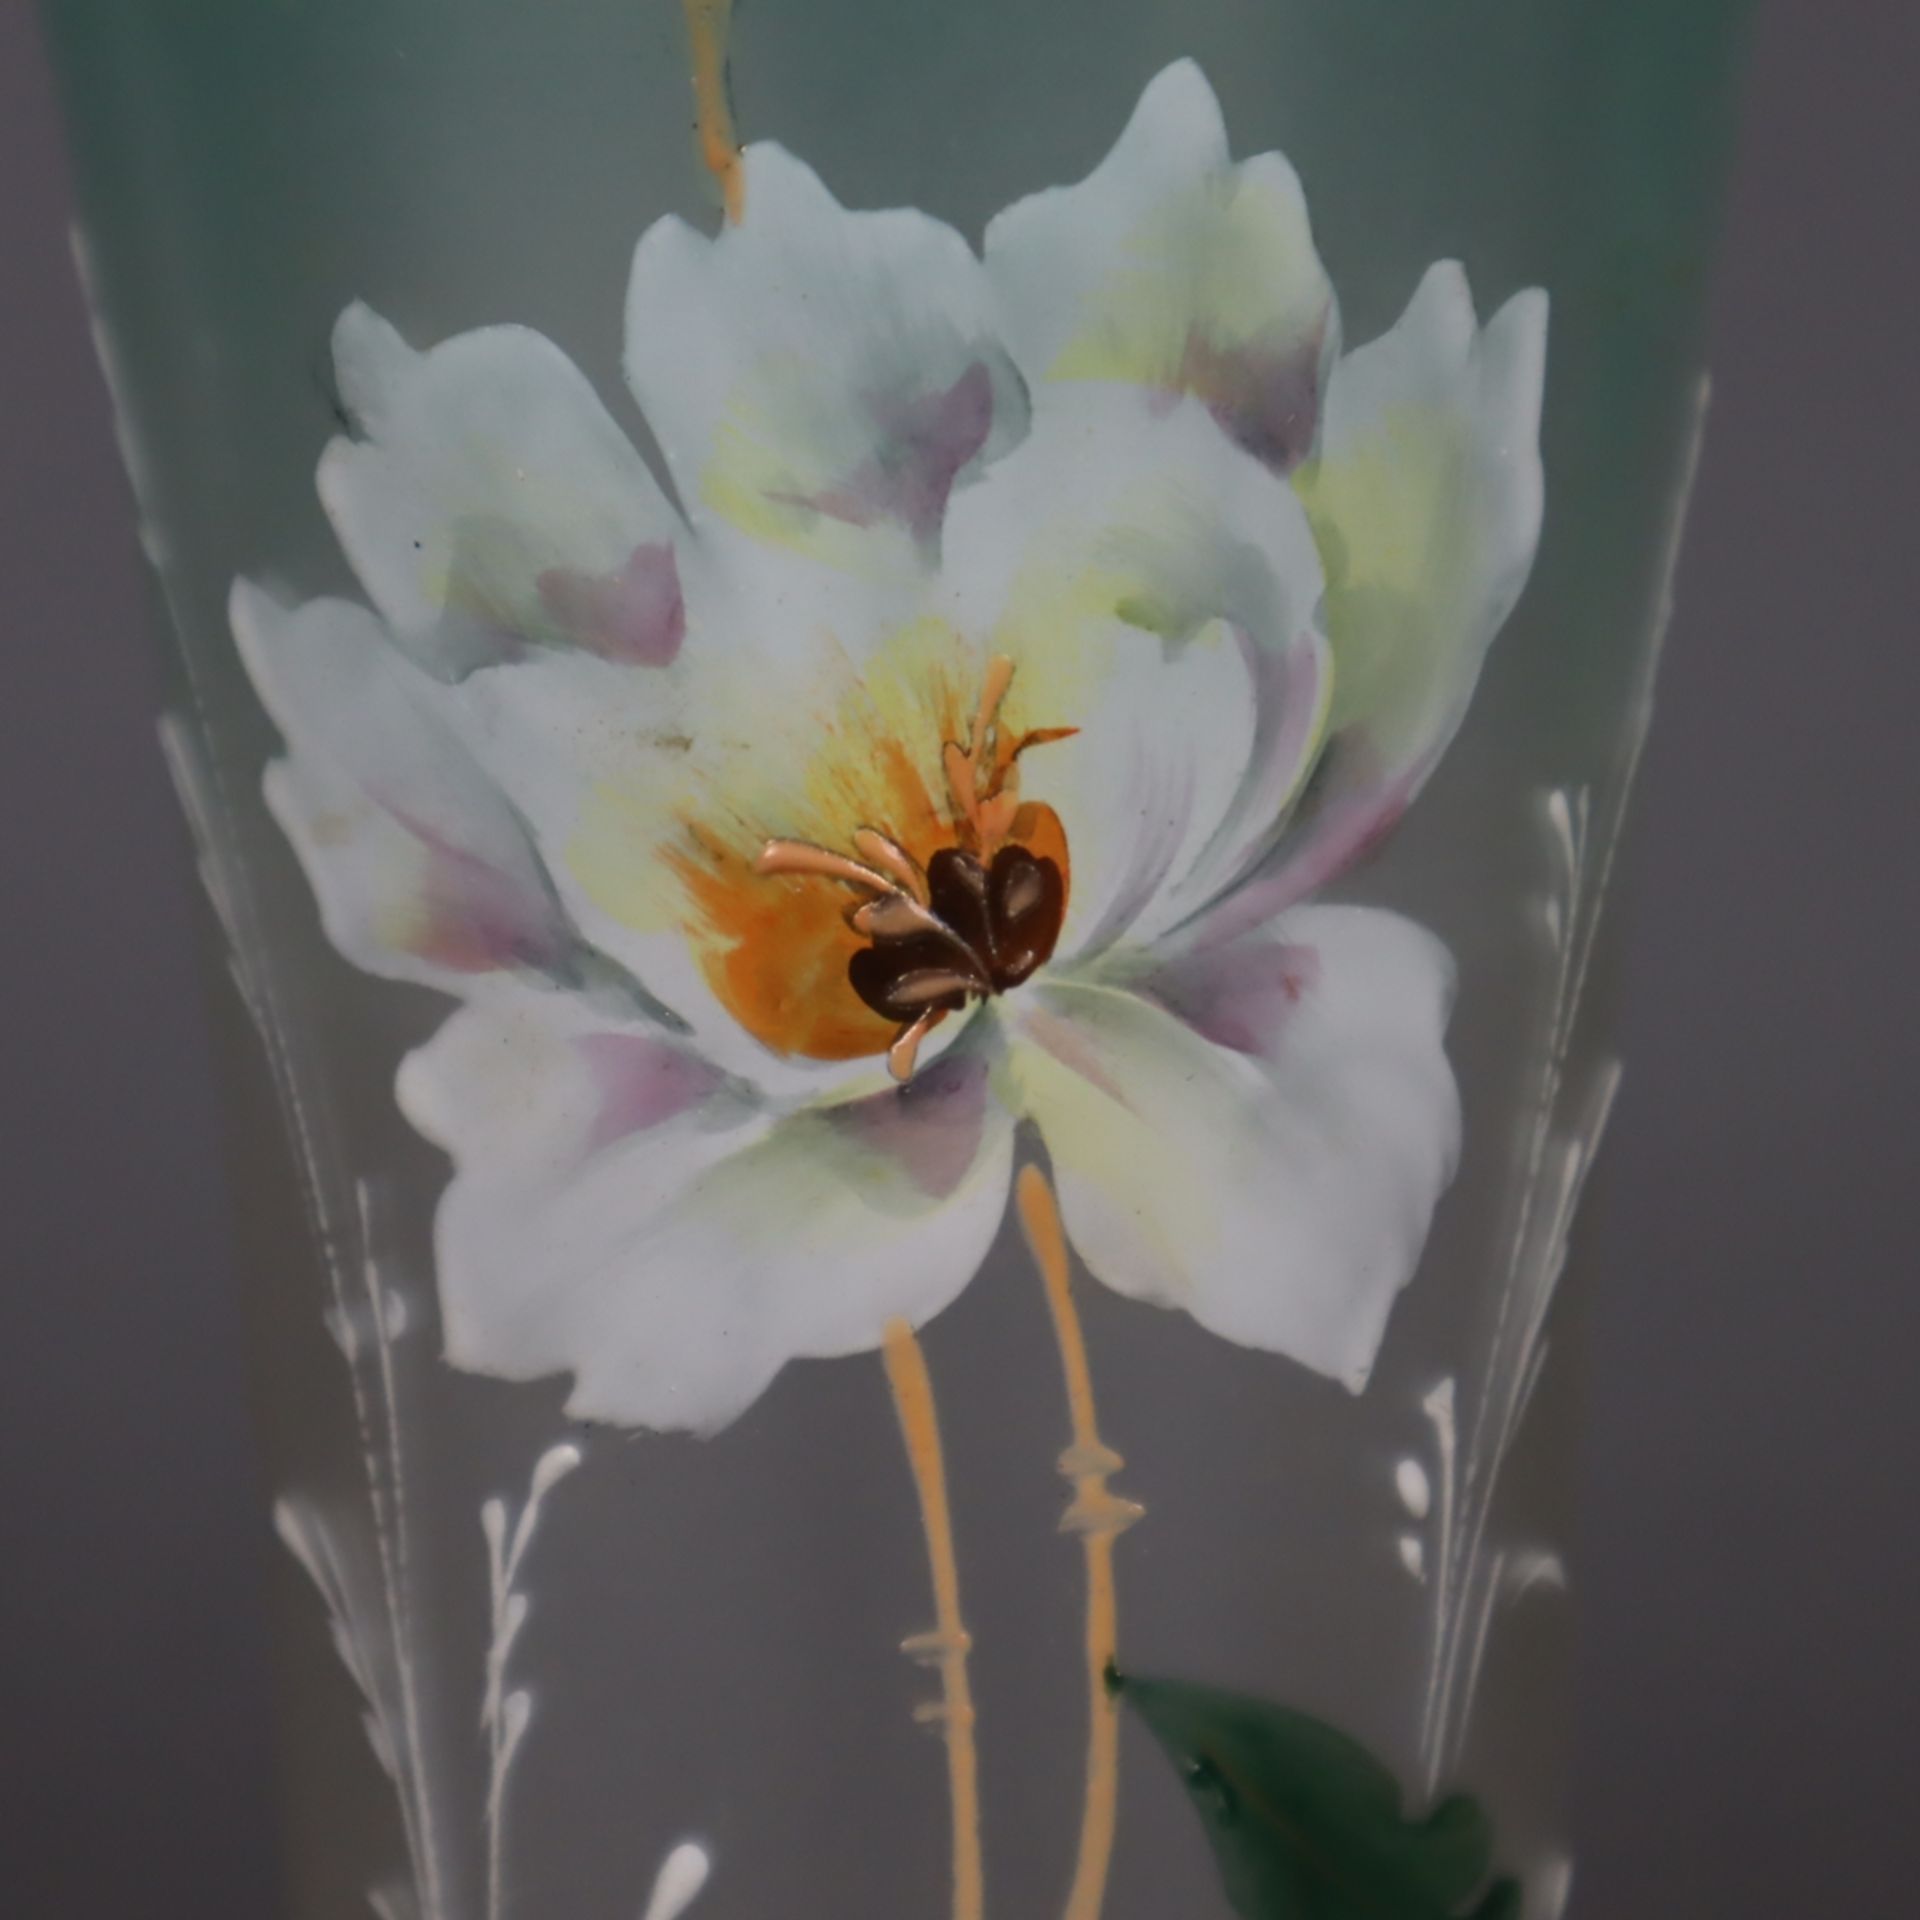 Glasvase - Klarglas, mattiert, Schauseite mit polychromem Blumendekor, Keulenfo - Image 3 of 7